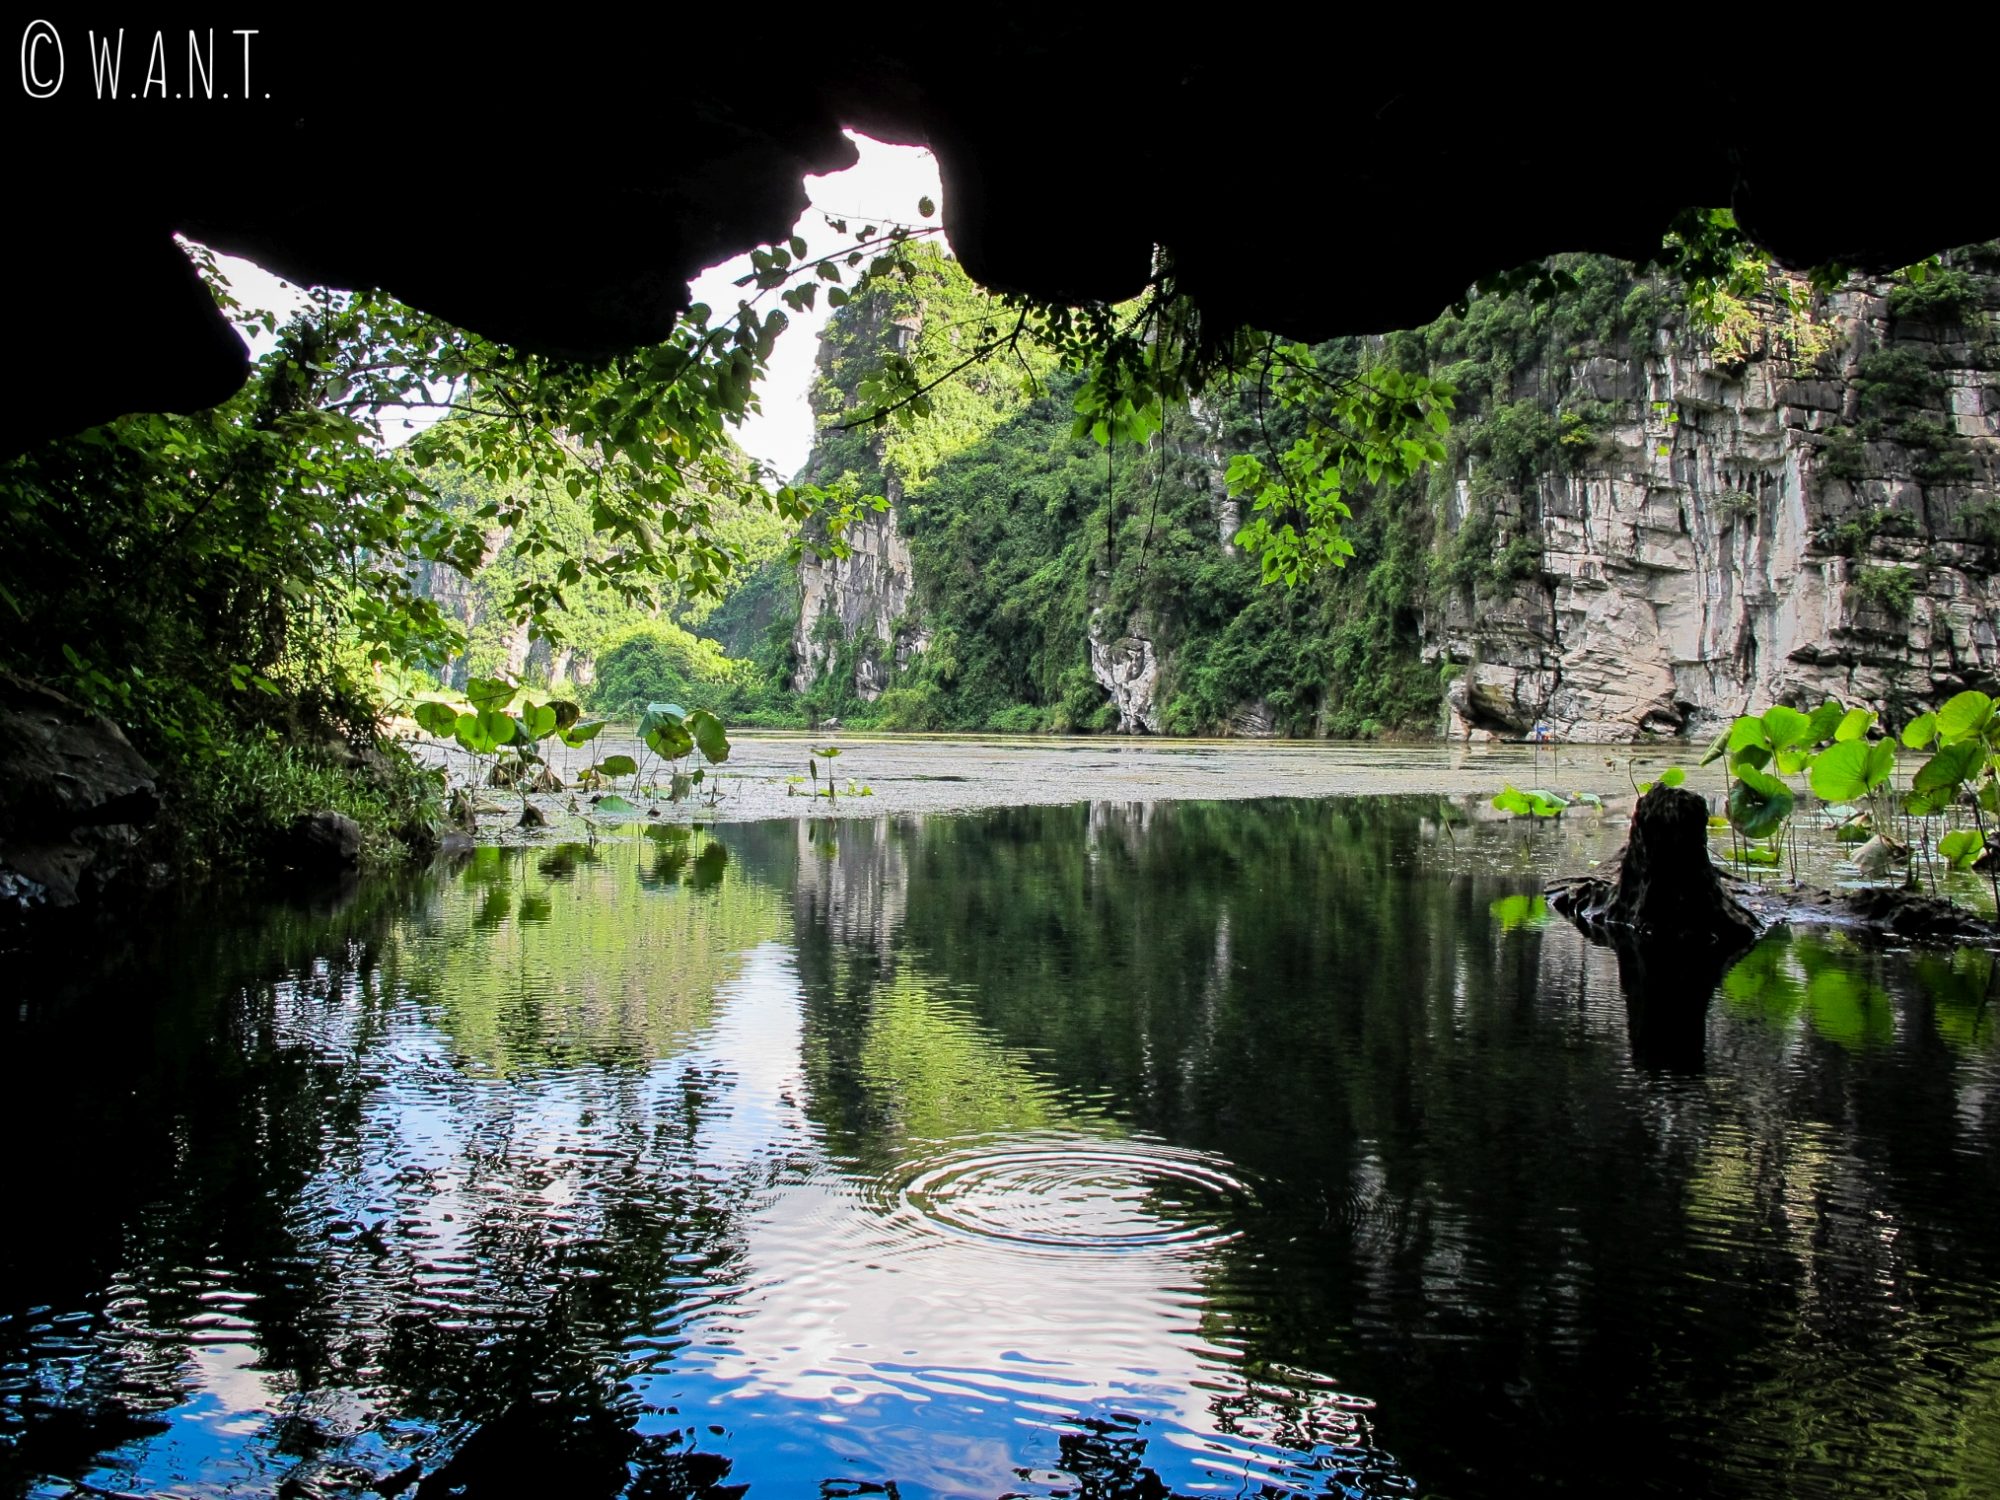 Lors de notre promenade en barque à Trang An, nous avons visité des grottes